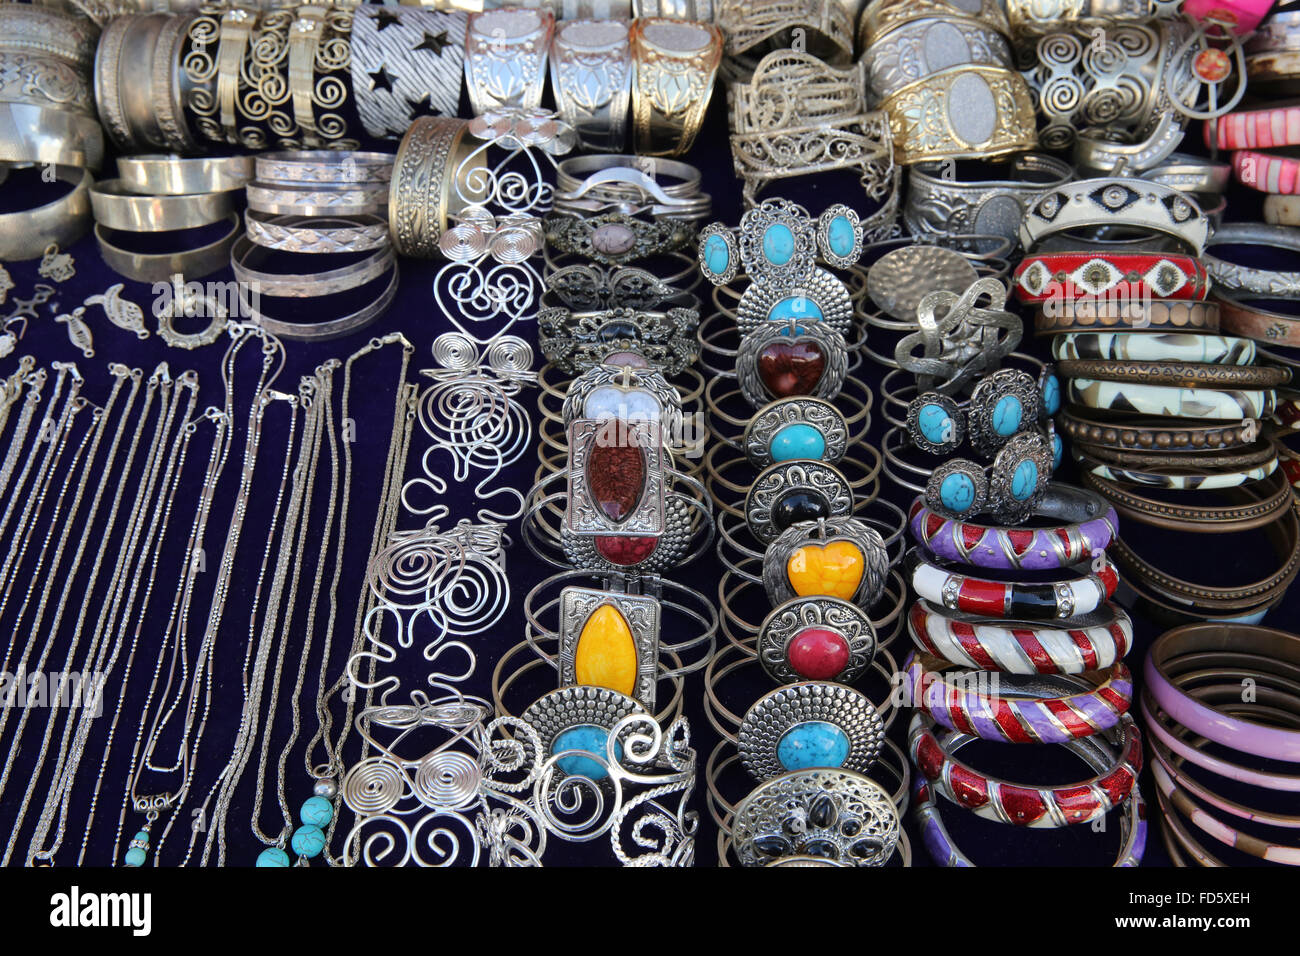 Jewelry sold in Sidi Bou Said. Stock Photo